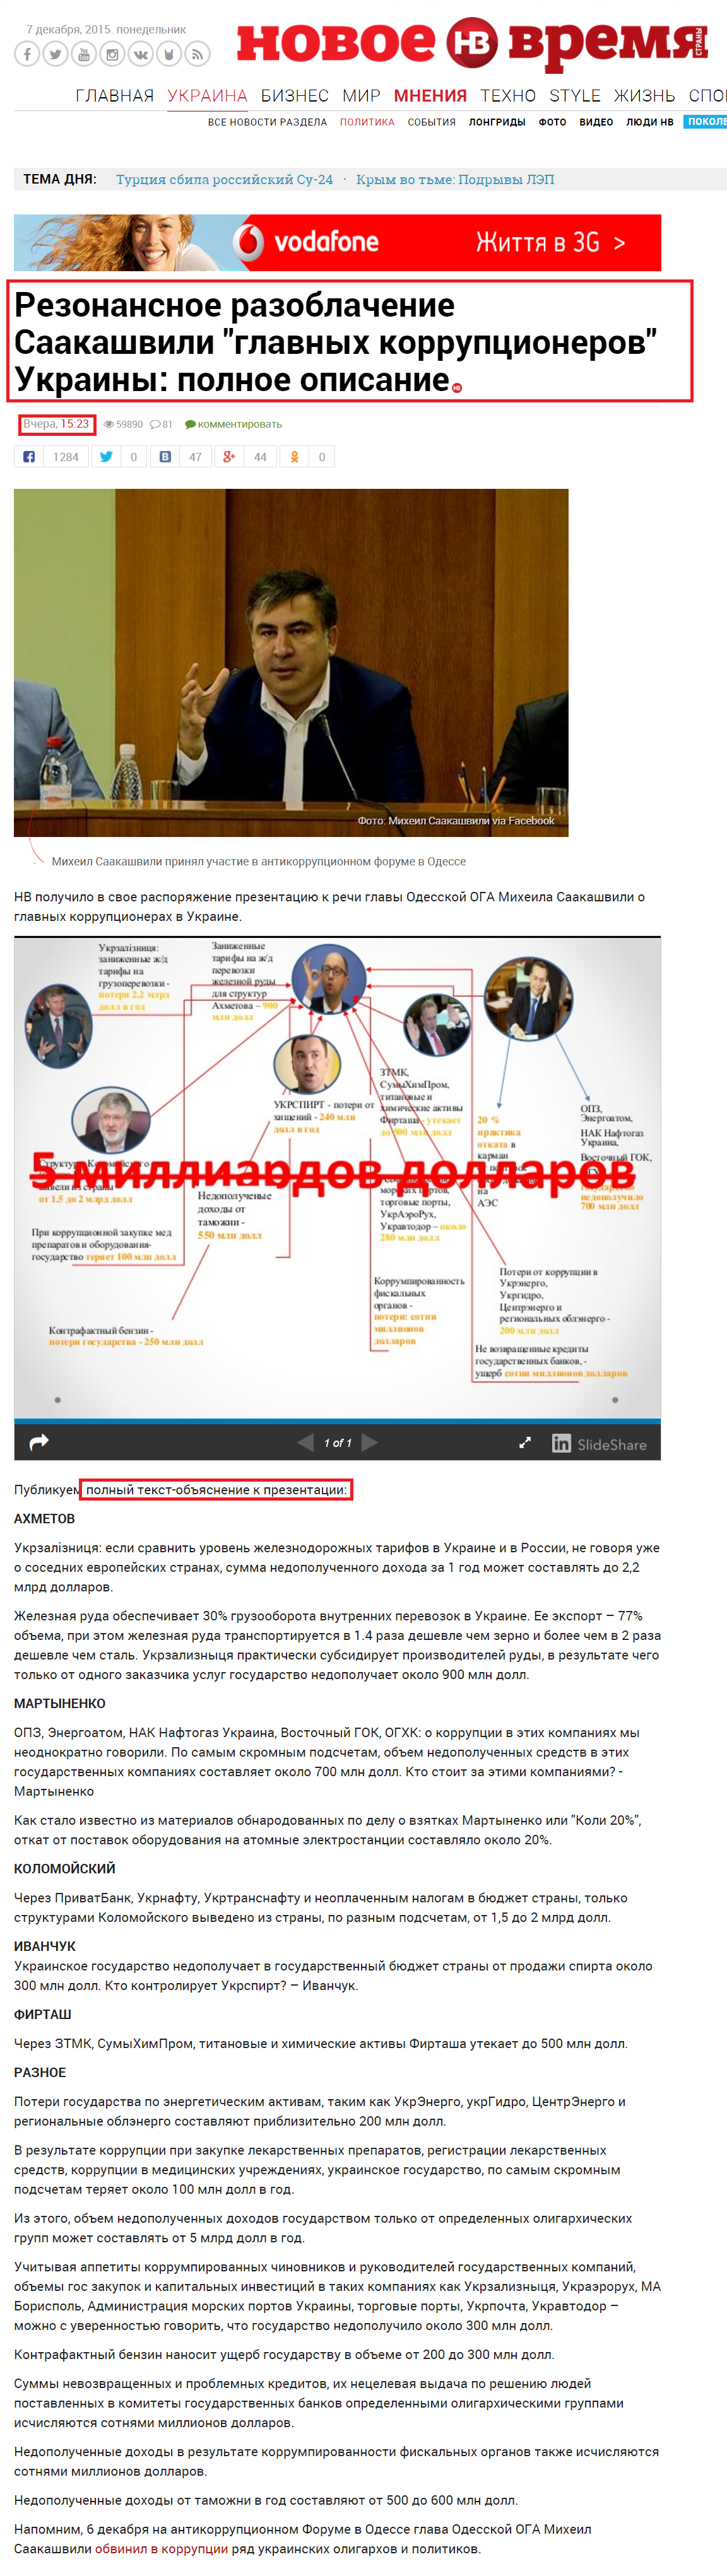 http://nv.ua/ukraine/politics/rezonansnaja-rech-saakashvili-o-glavnyh-korruptsionerah-ukrainy-polnoe-opisanie-84207.html